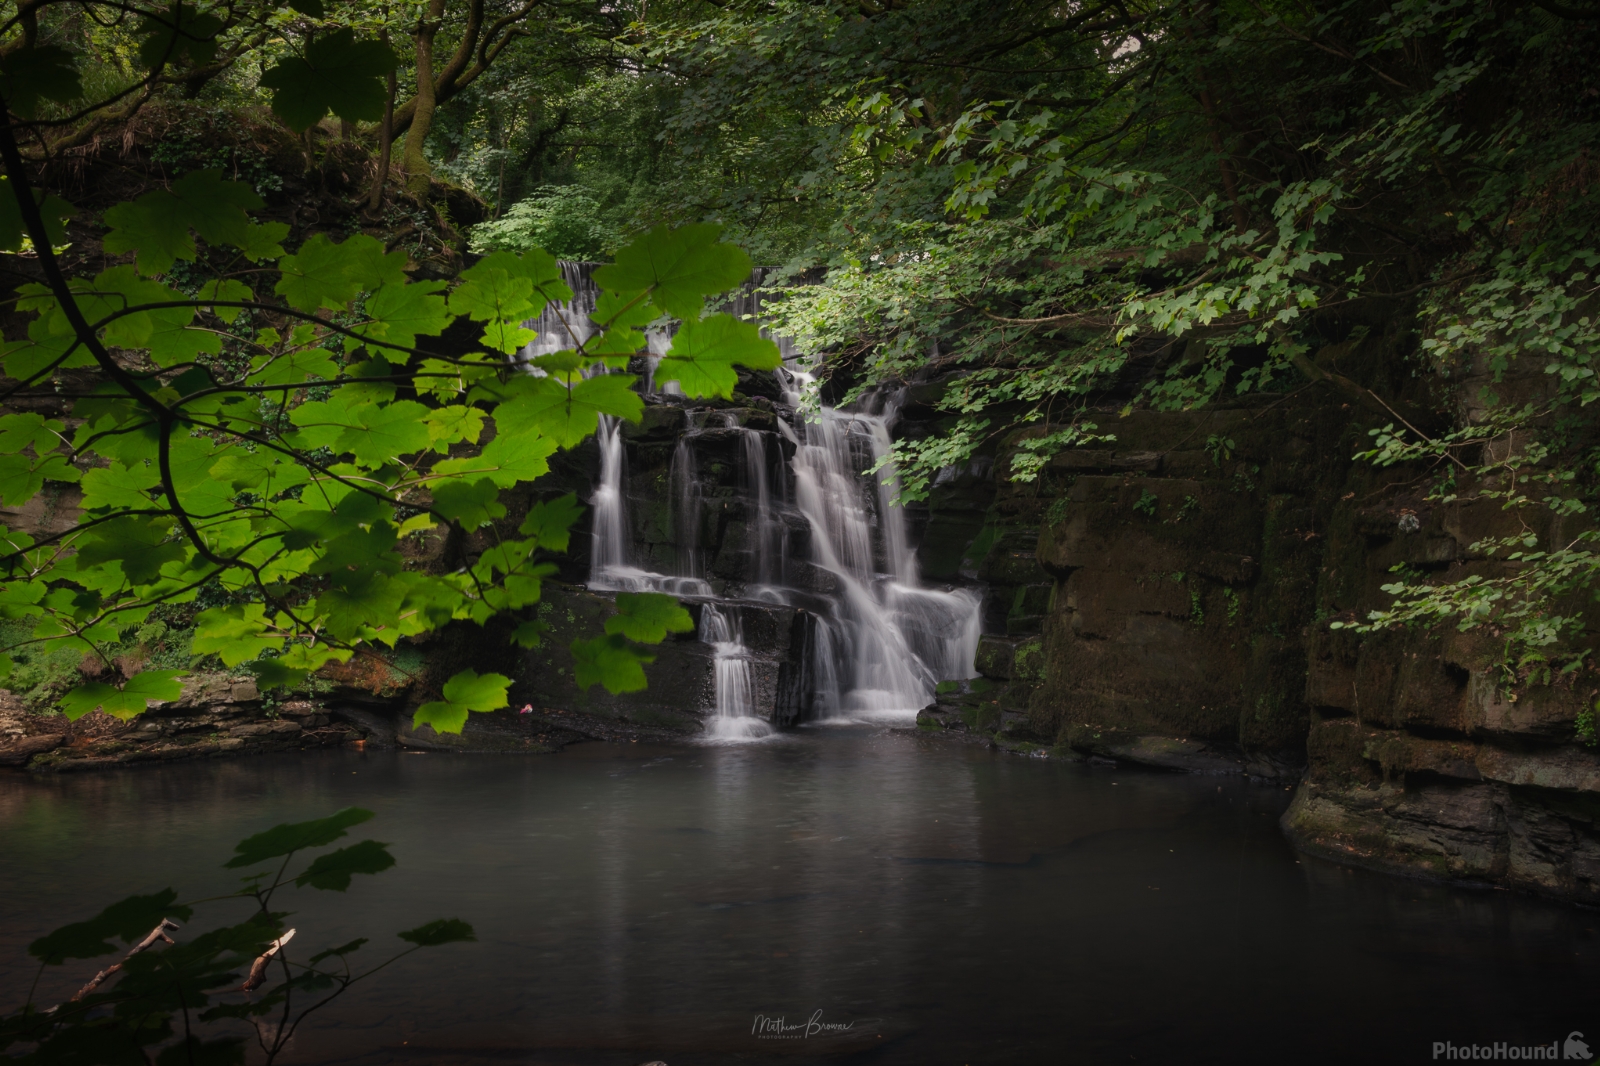 Image of Neath Abbey Waterfall by Mathew Browne